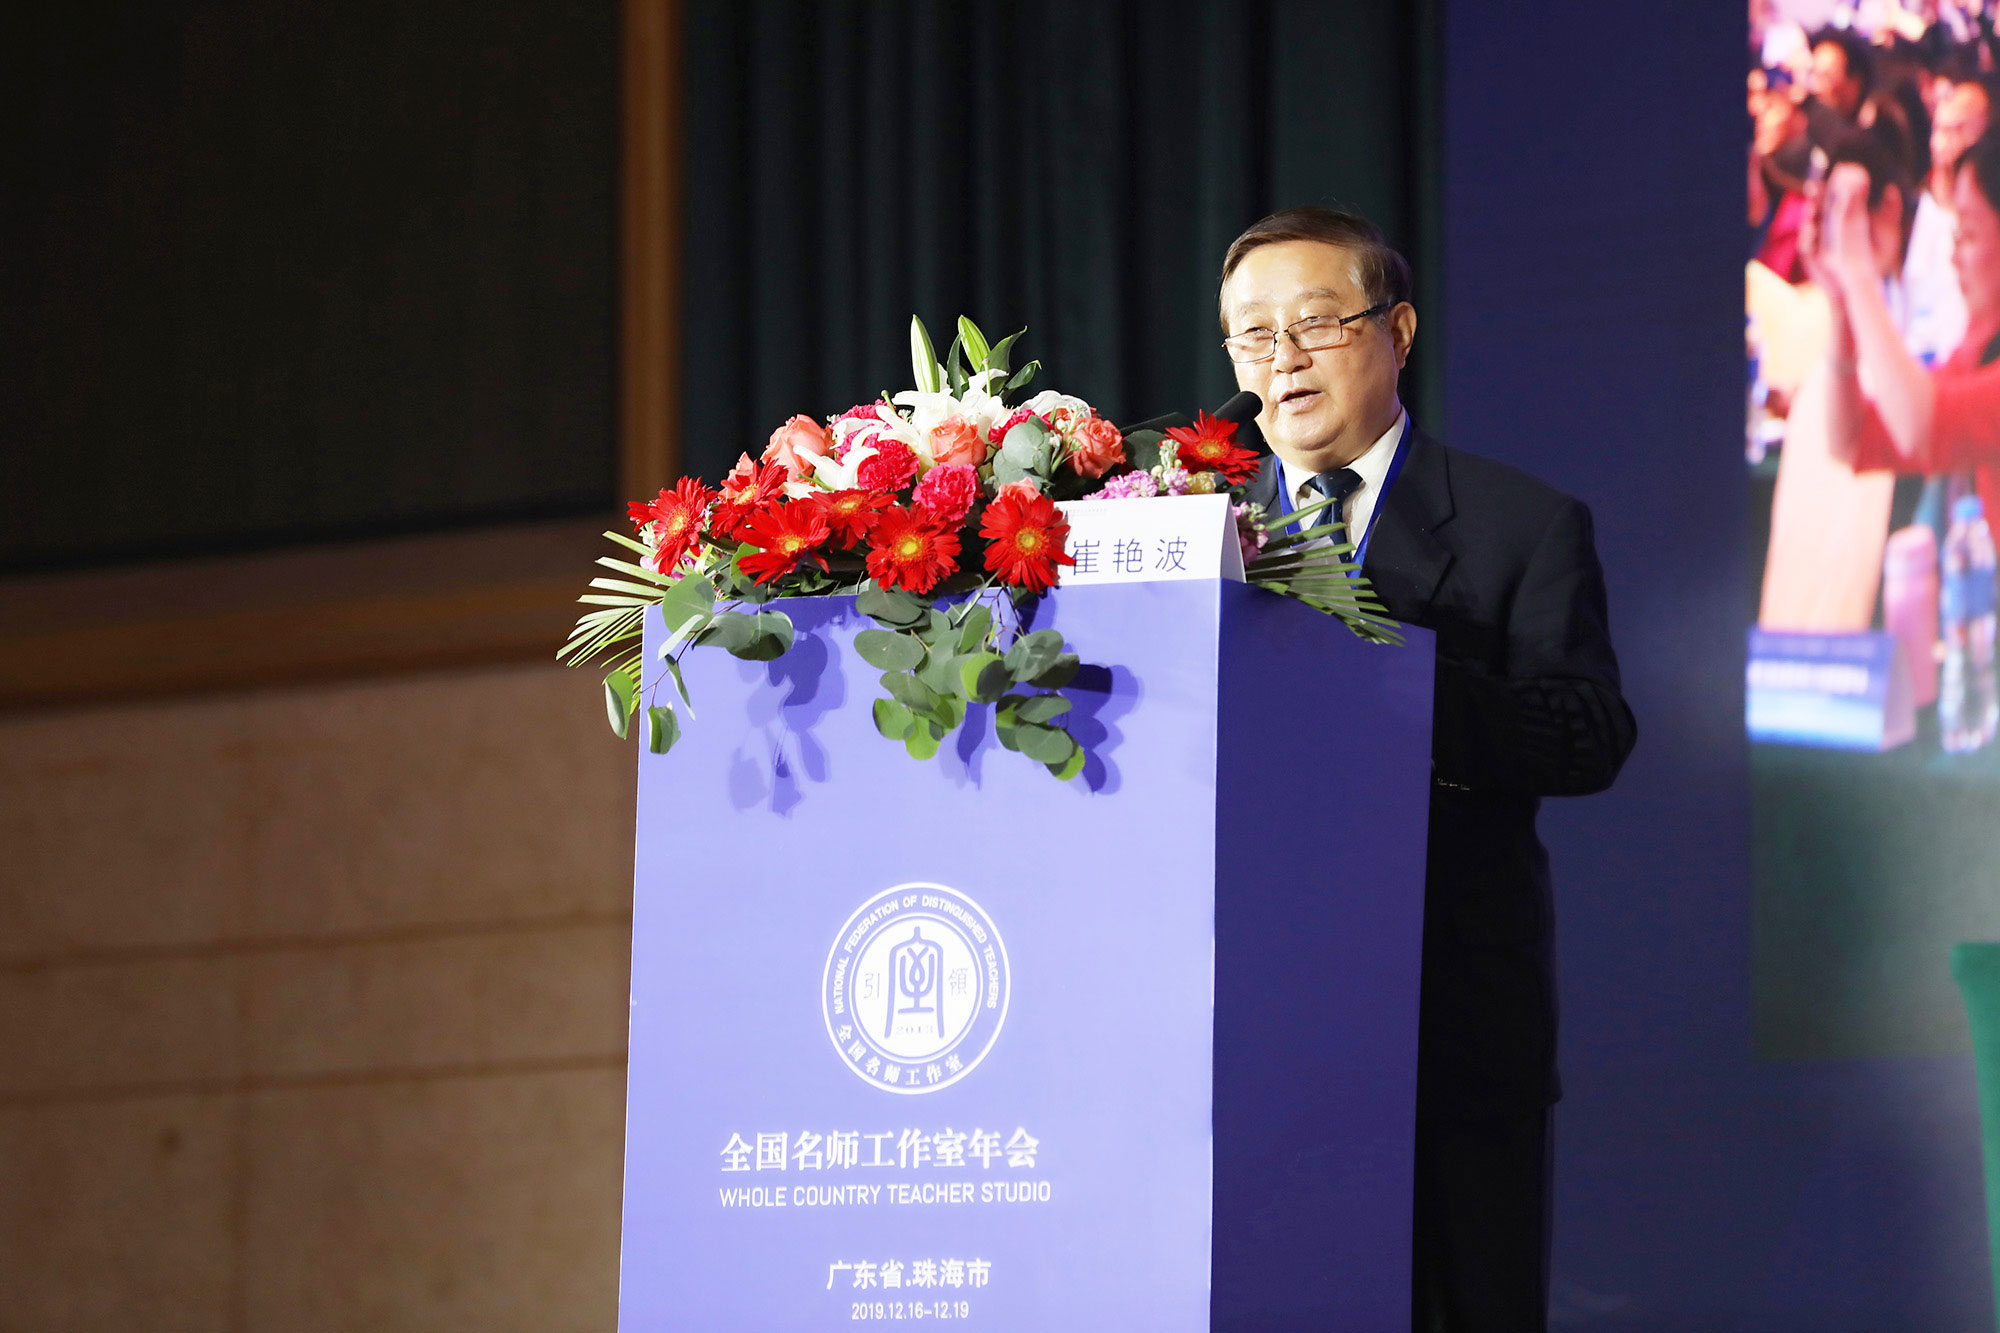 北京中教市培教育研究院副院长、清华大学教授魏续臻致开幕词。